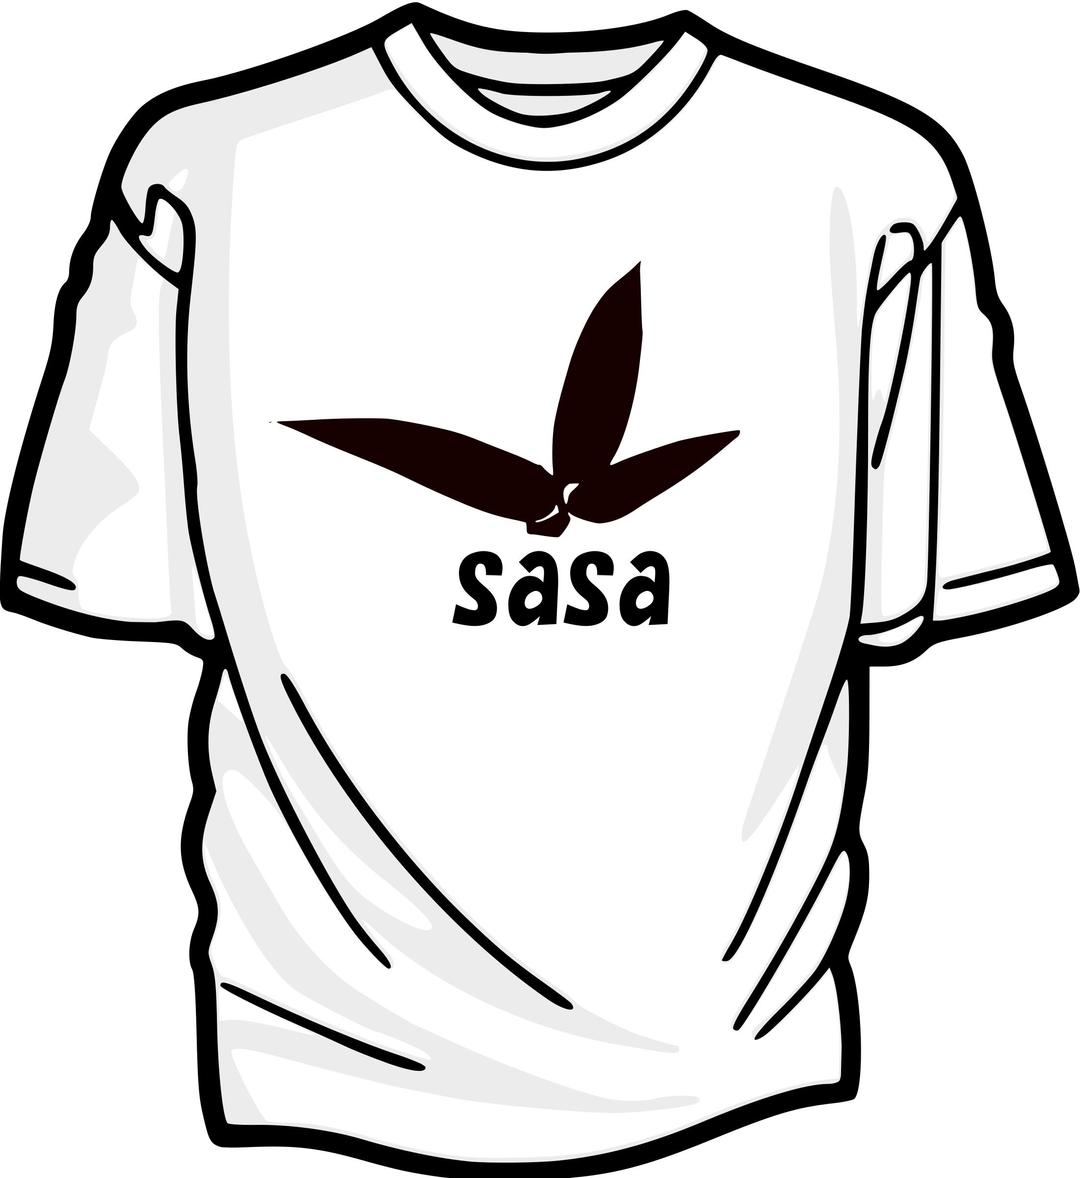 Tshirt with sasa logo png transparent